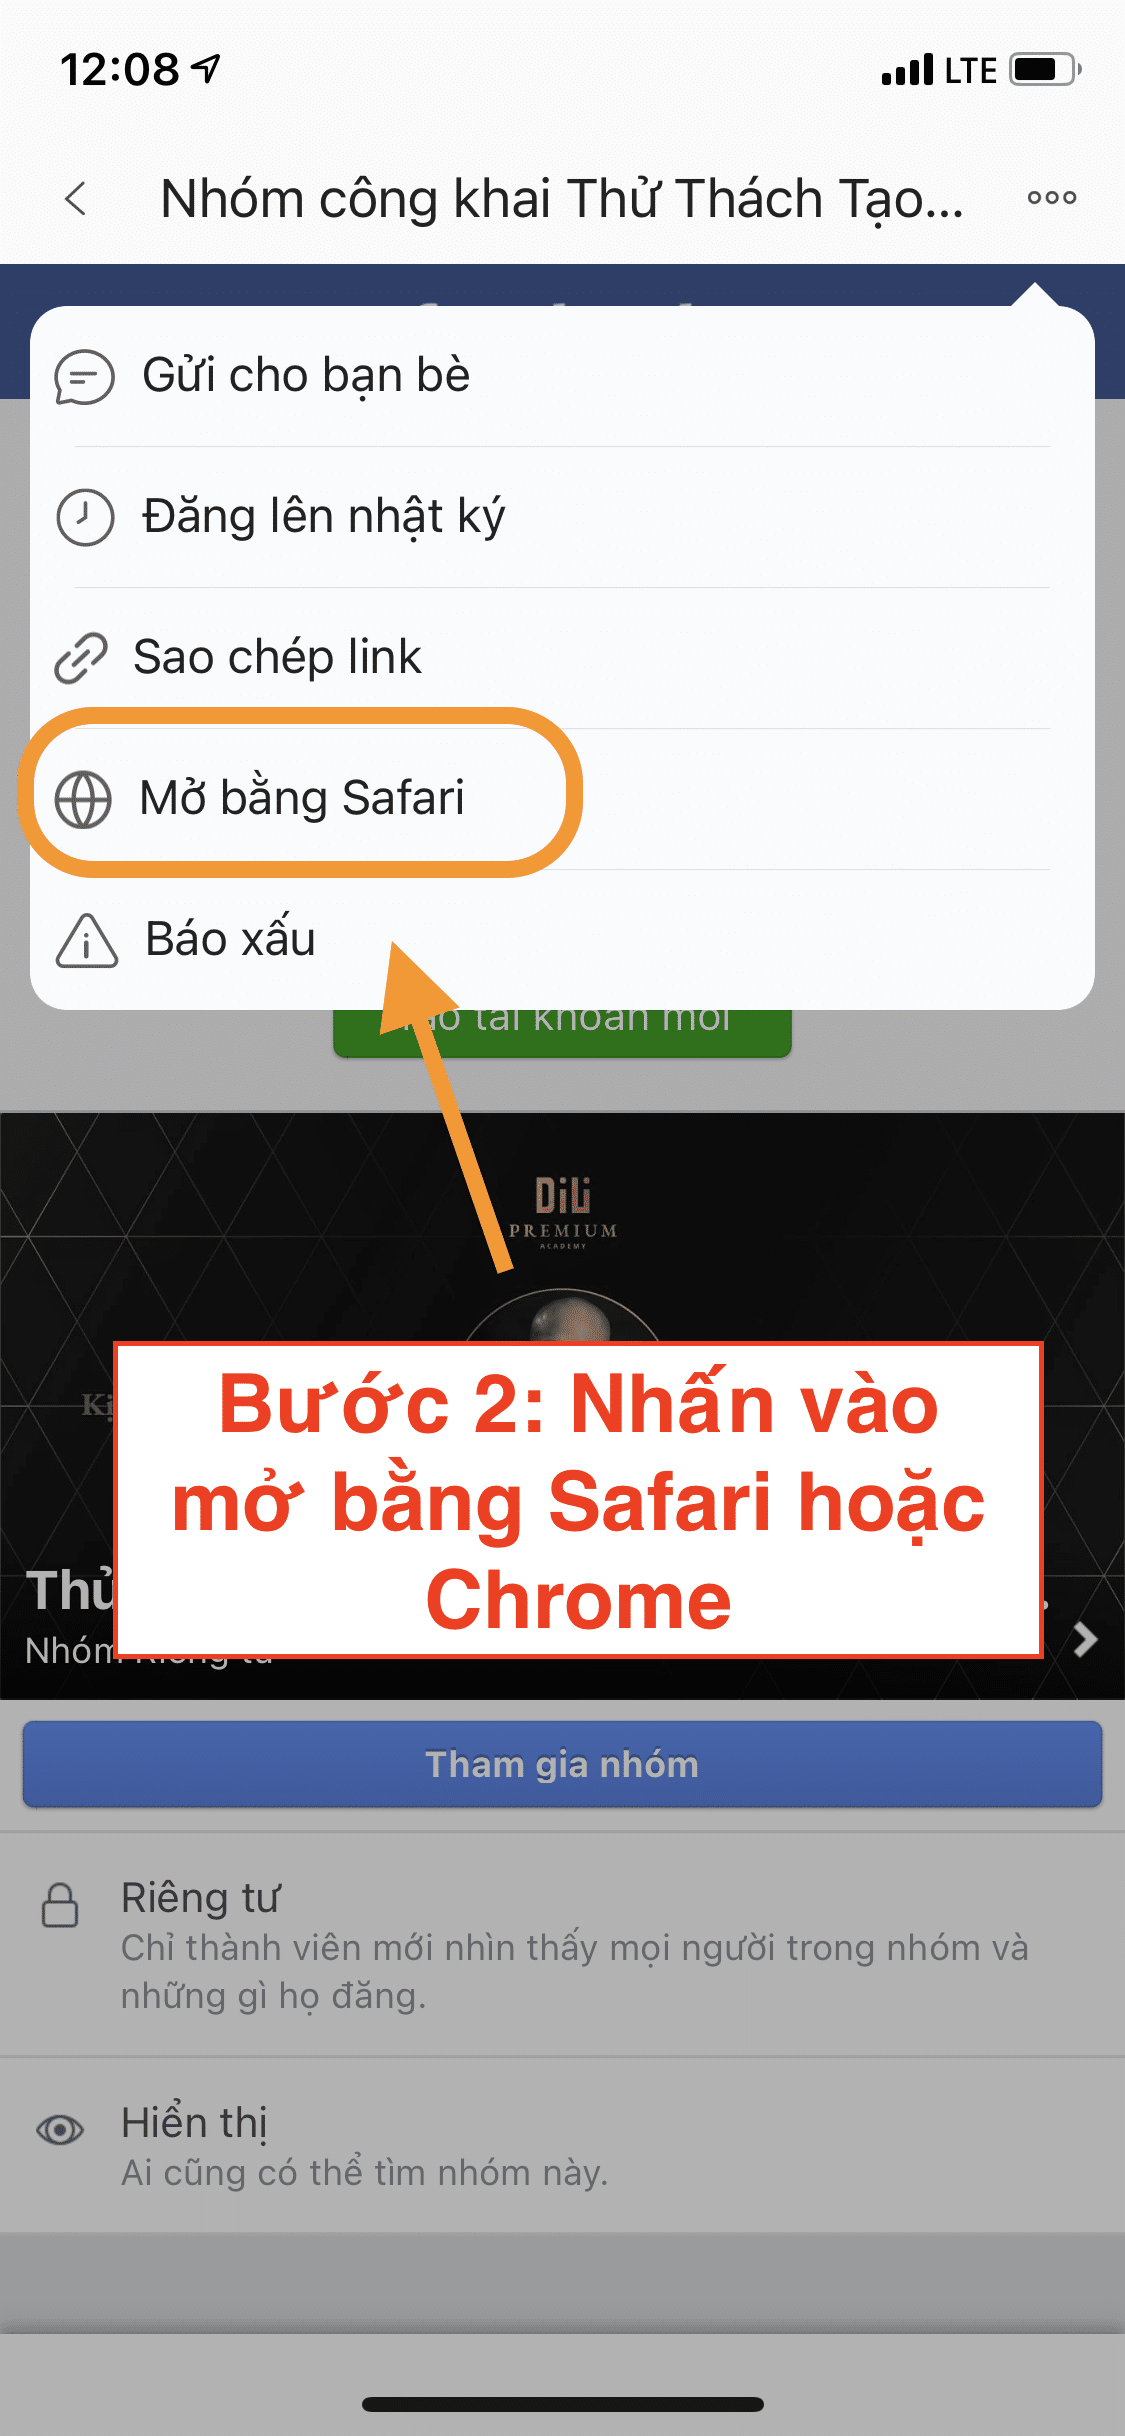 Nhấn mở bằng Safari hoặc Chrome